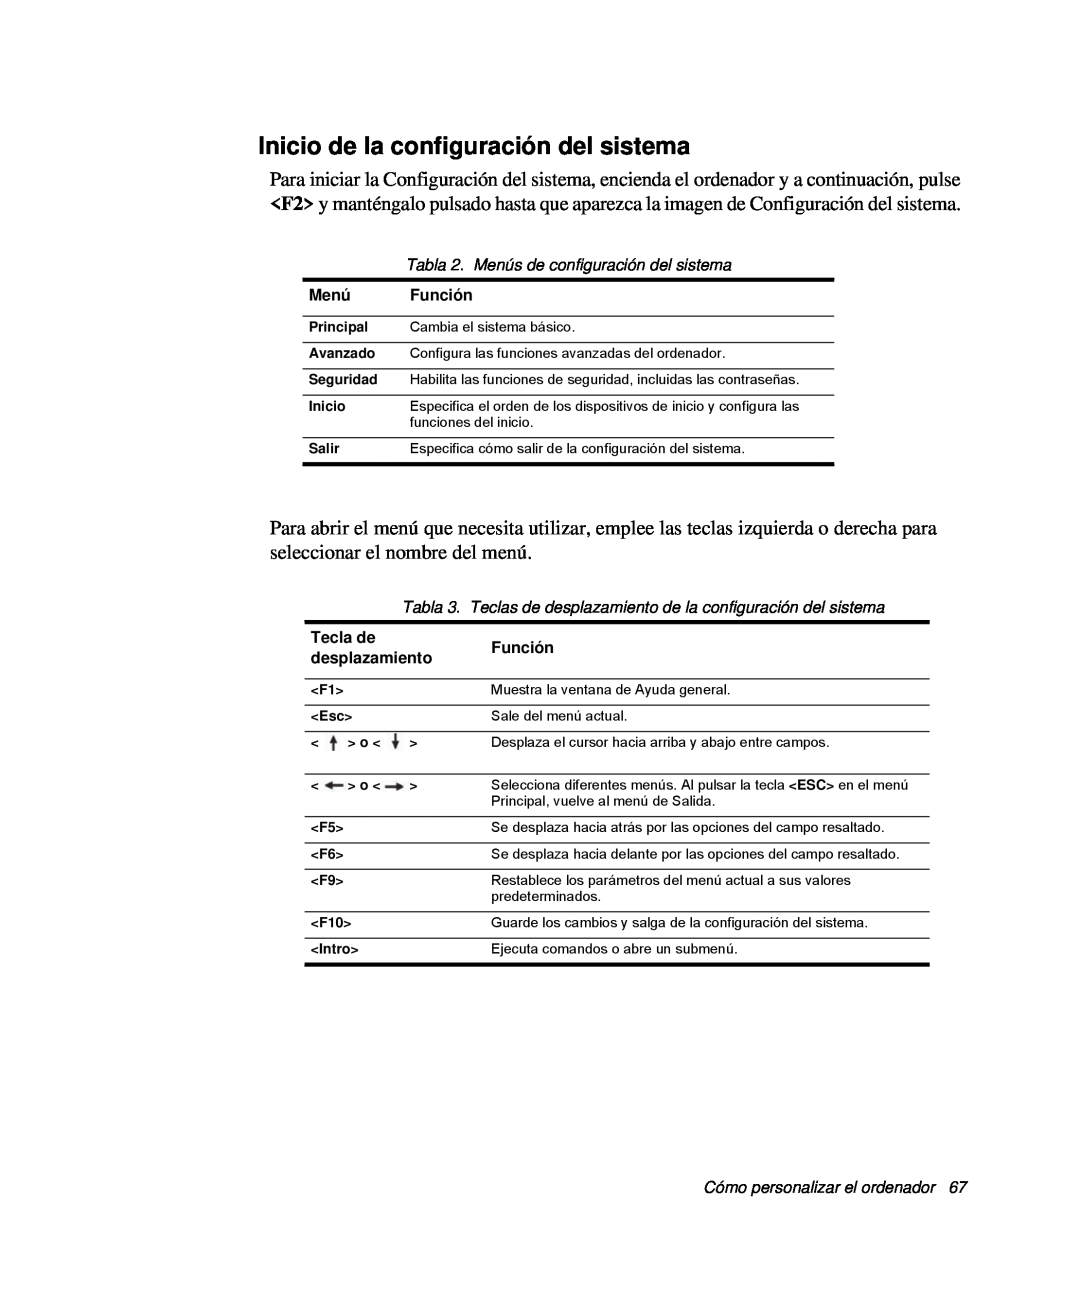 Samsung NP-Q30T002/SES manual Inicio de la configuración del sistema, Tabla 2. Menús de configuración del sistema, Función 